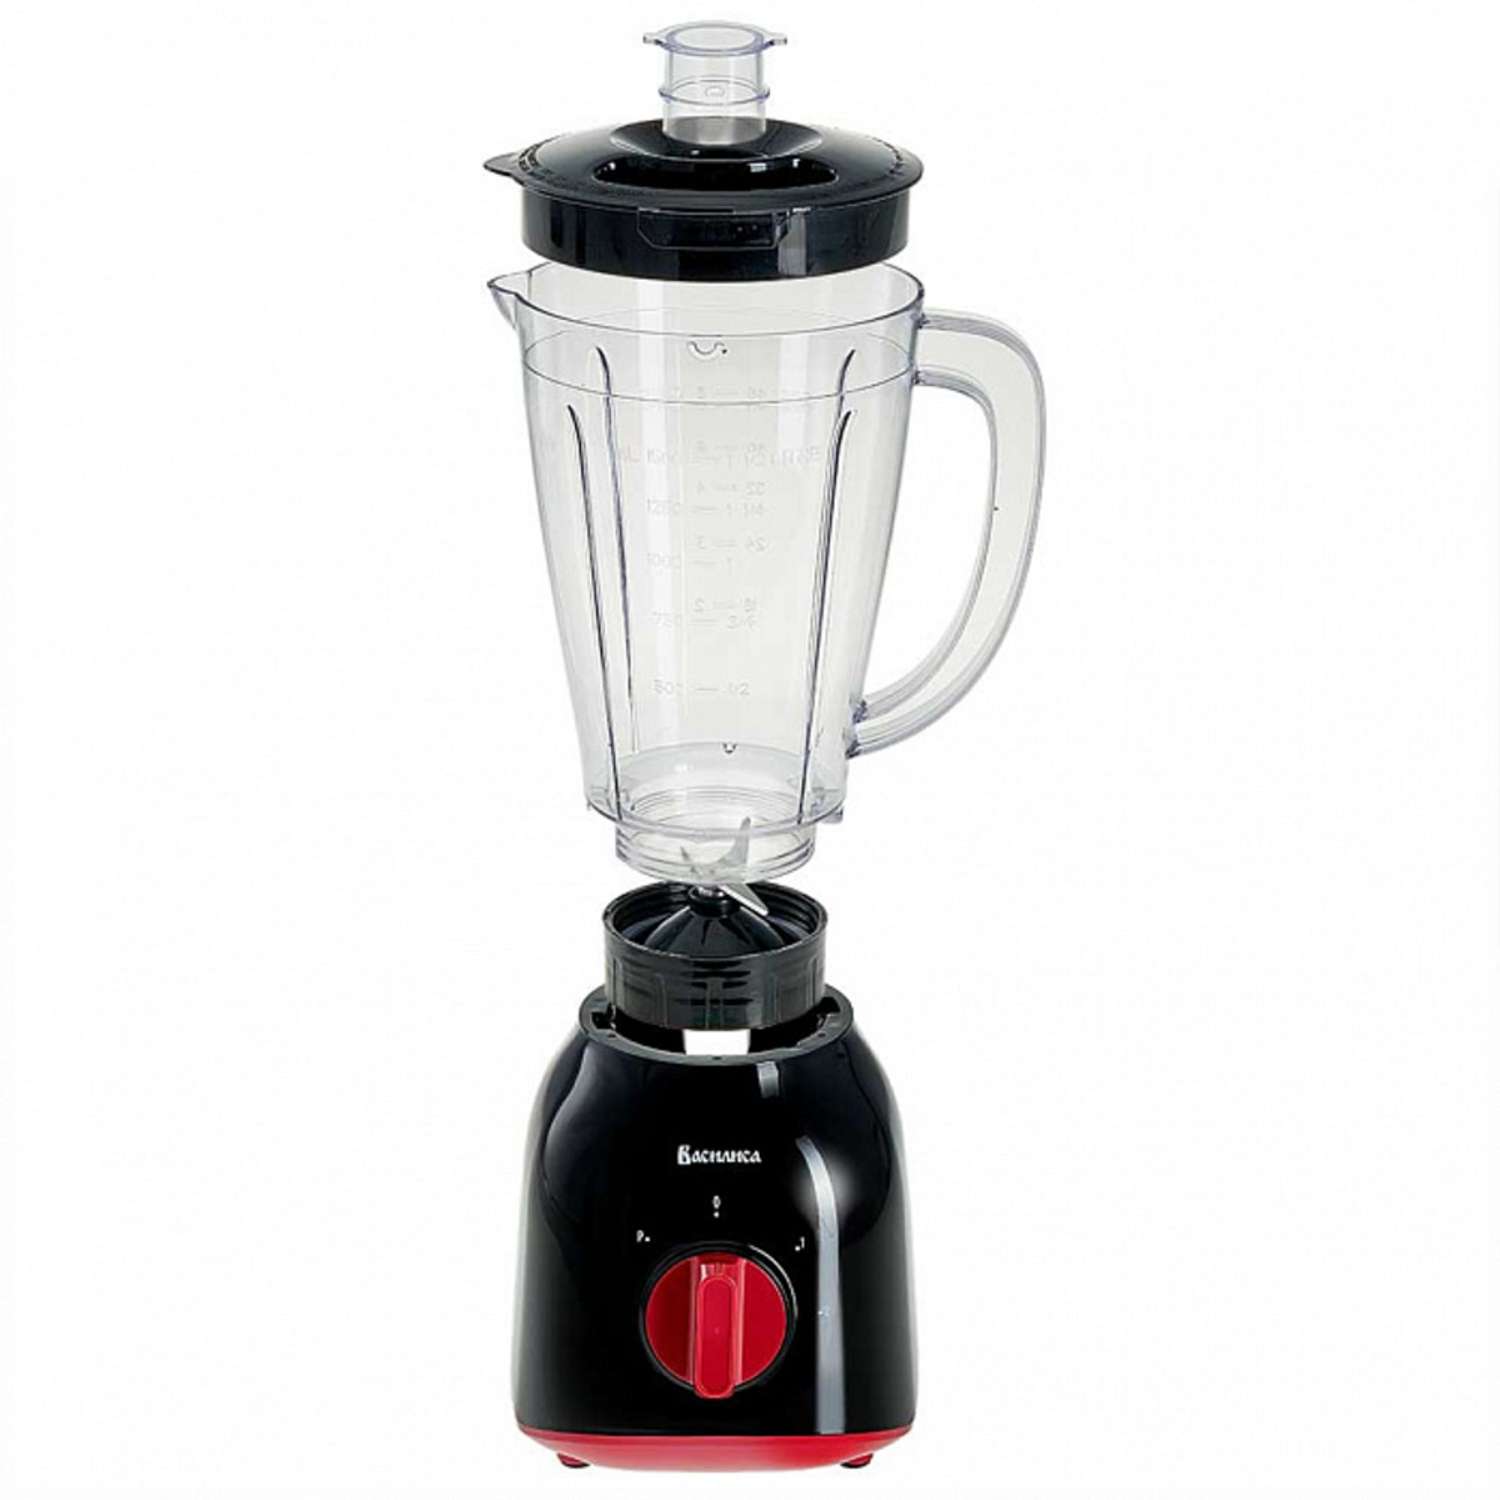 Блендер Василиса ВА-0300 черный с красным 800Вт чаша 1.5 л. - фото 4